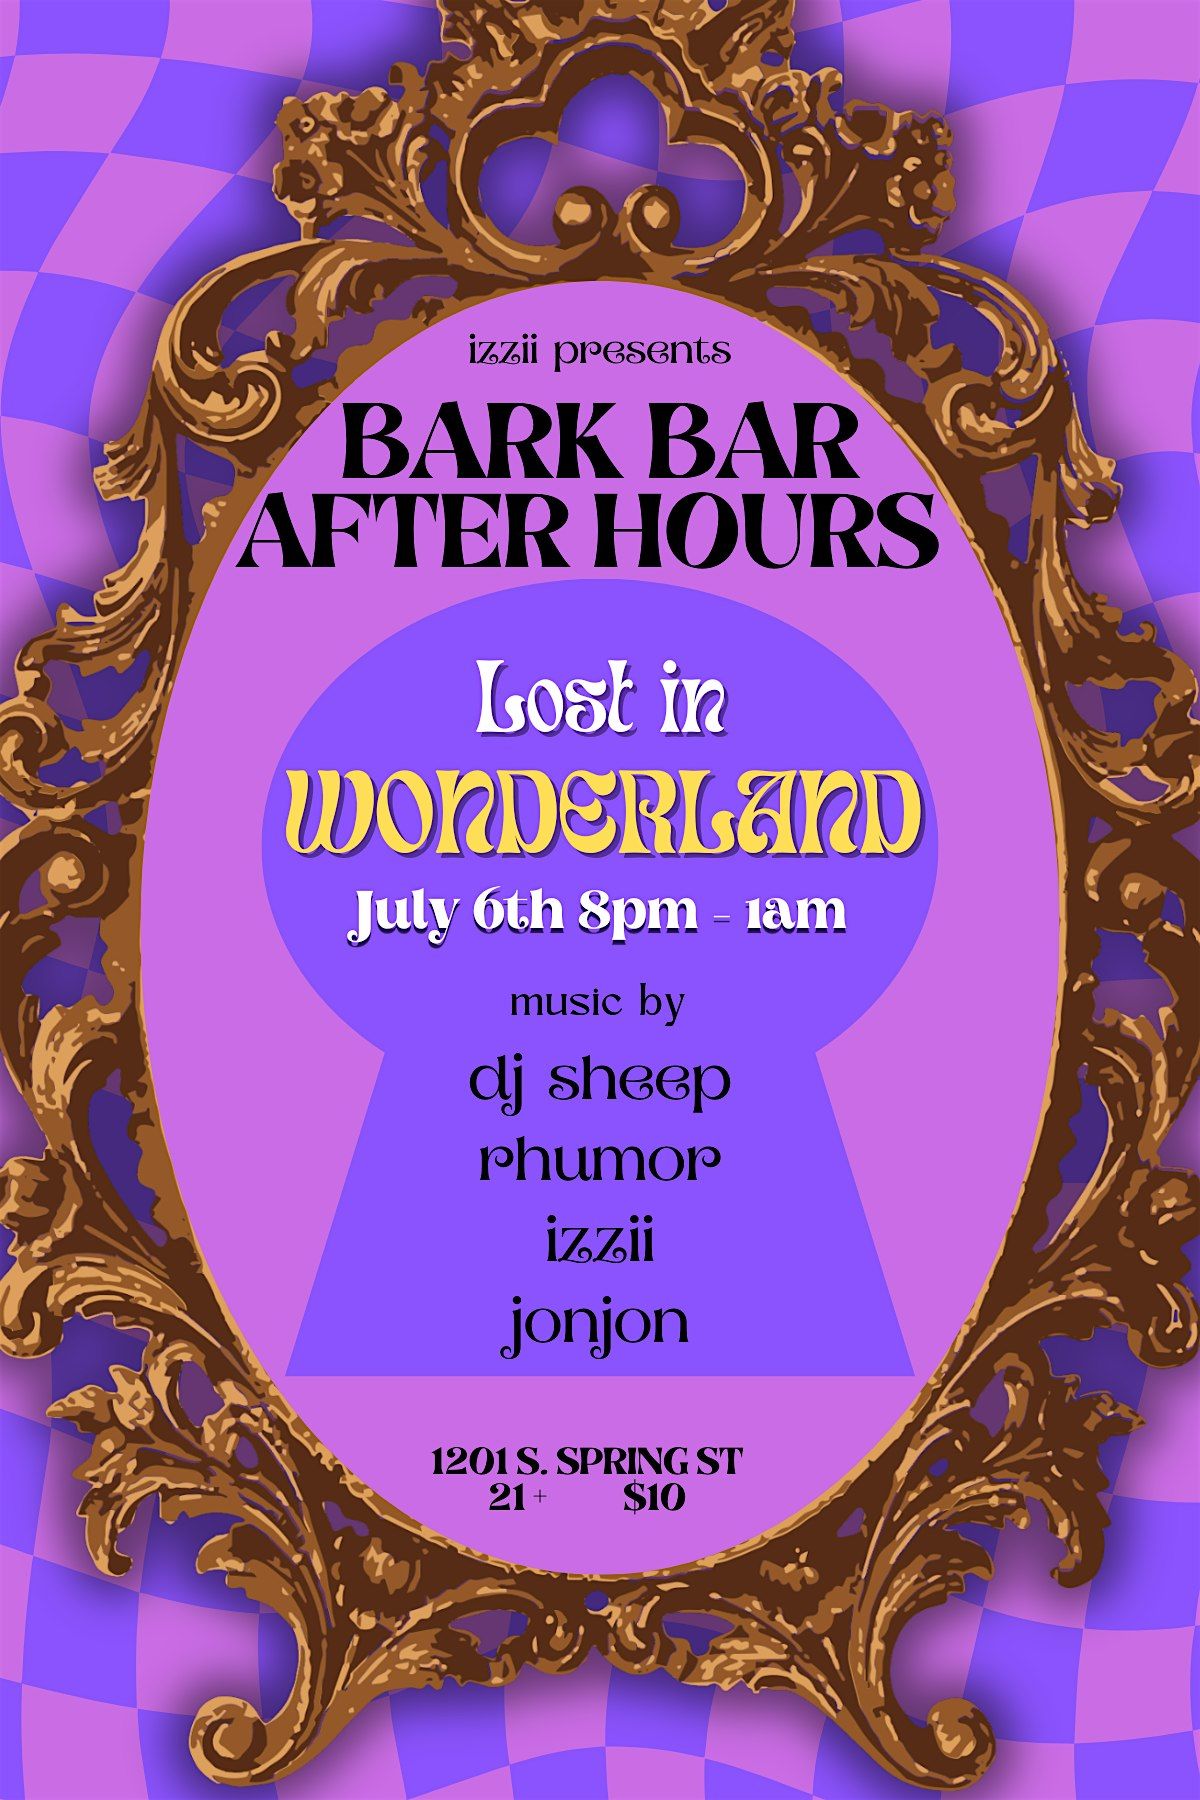 Bark Bar After Hours - Lost in Wonderland